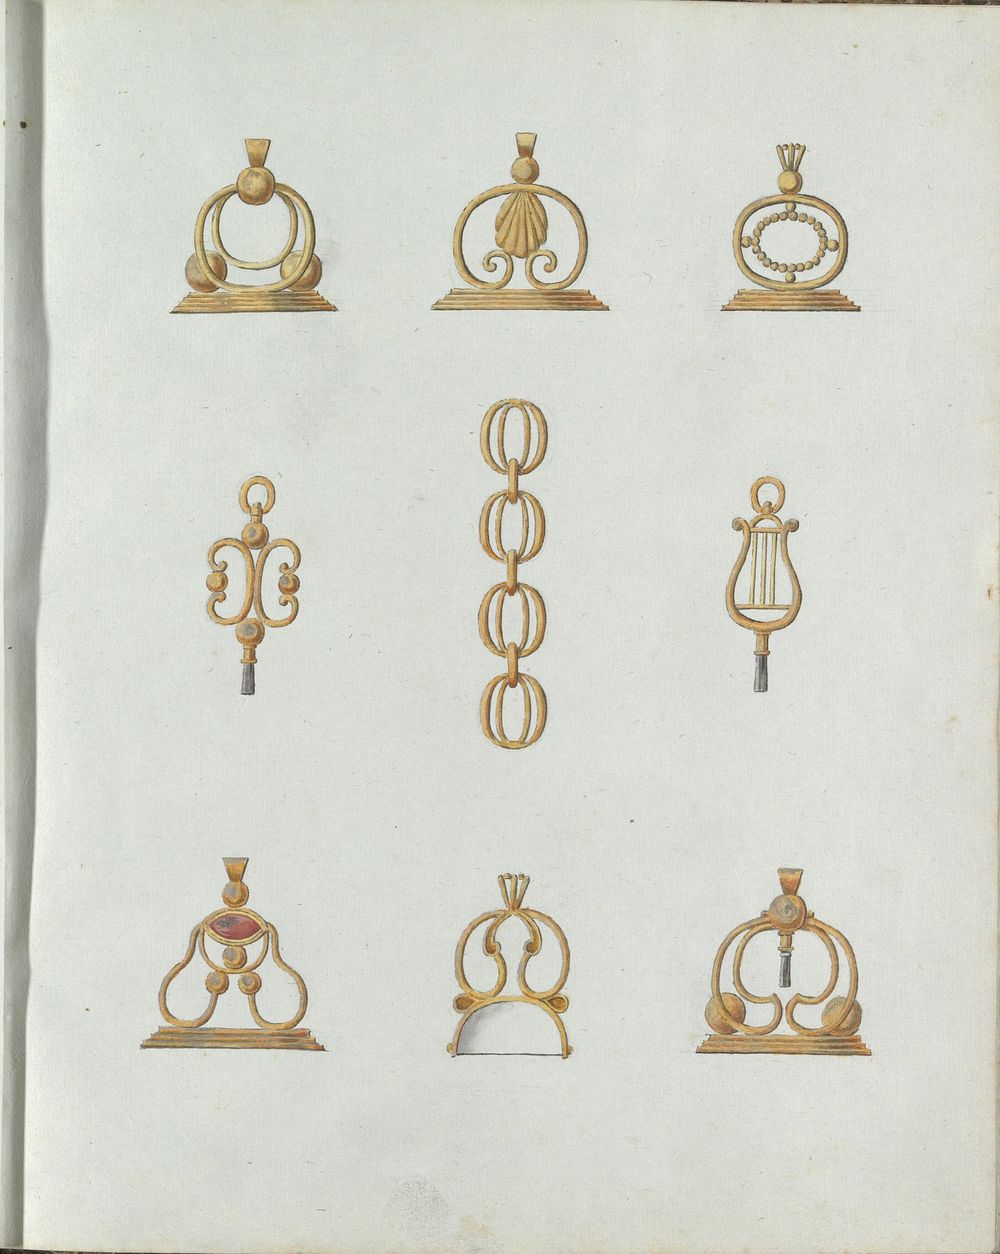 Negen ontwerpen van hangers (c. 1800 - c. 1810) by Carl Friedrich Bärthel